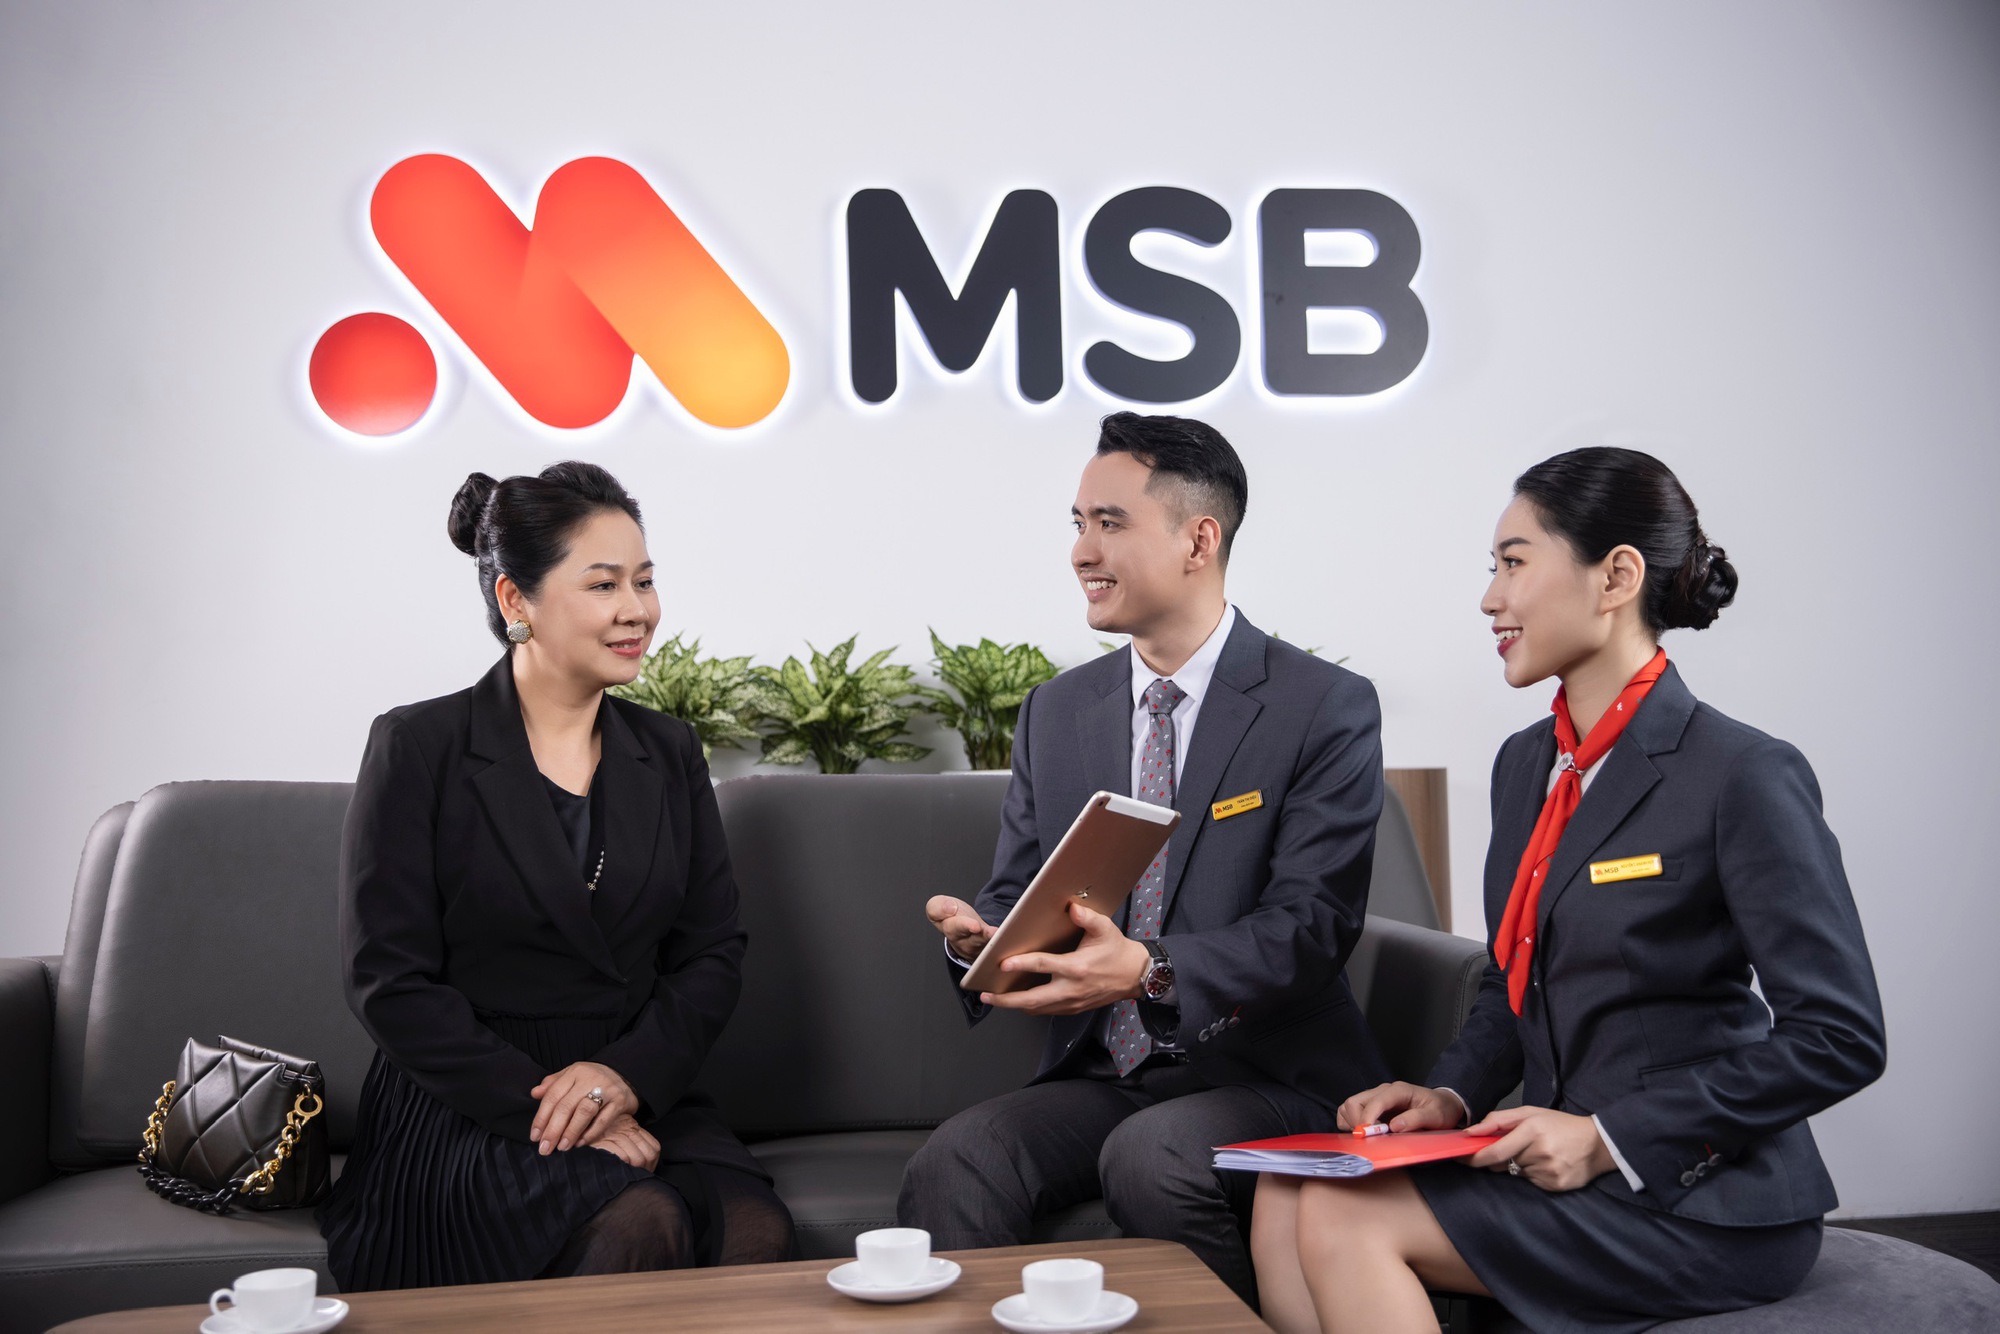 MSB điều chỉnh giảm đến 1% lãi suất cho vay với khách hàng doanh nghiệp - Ảnh 1.